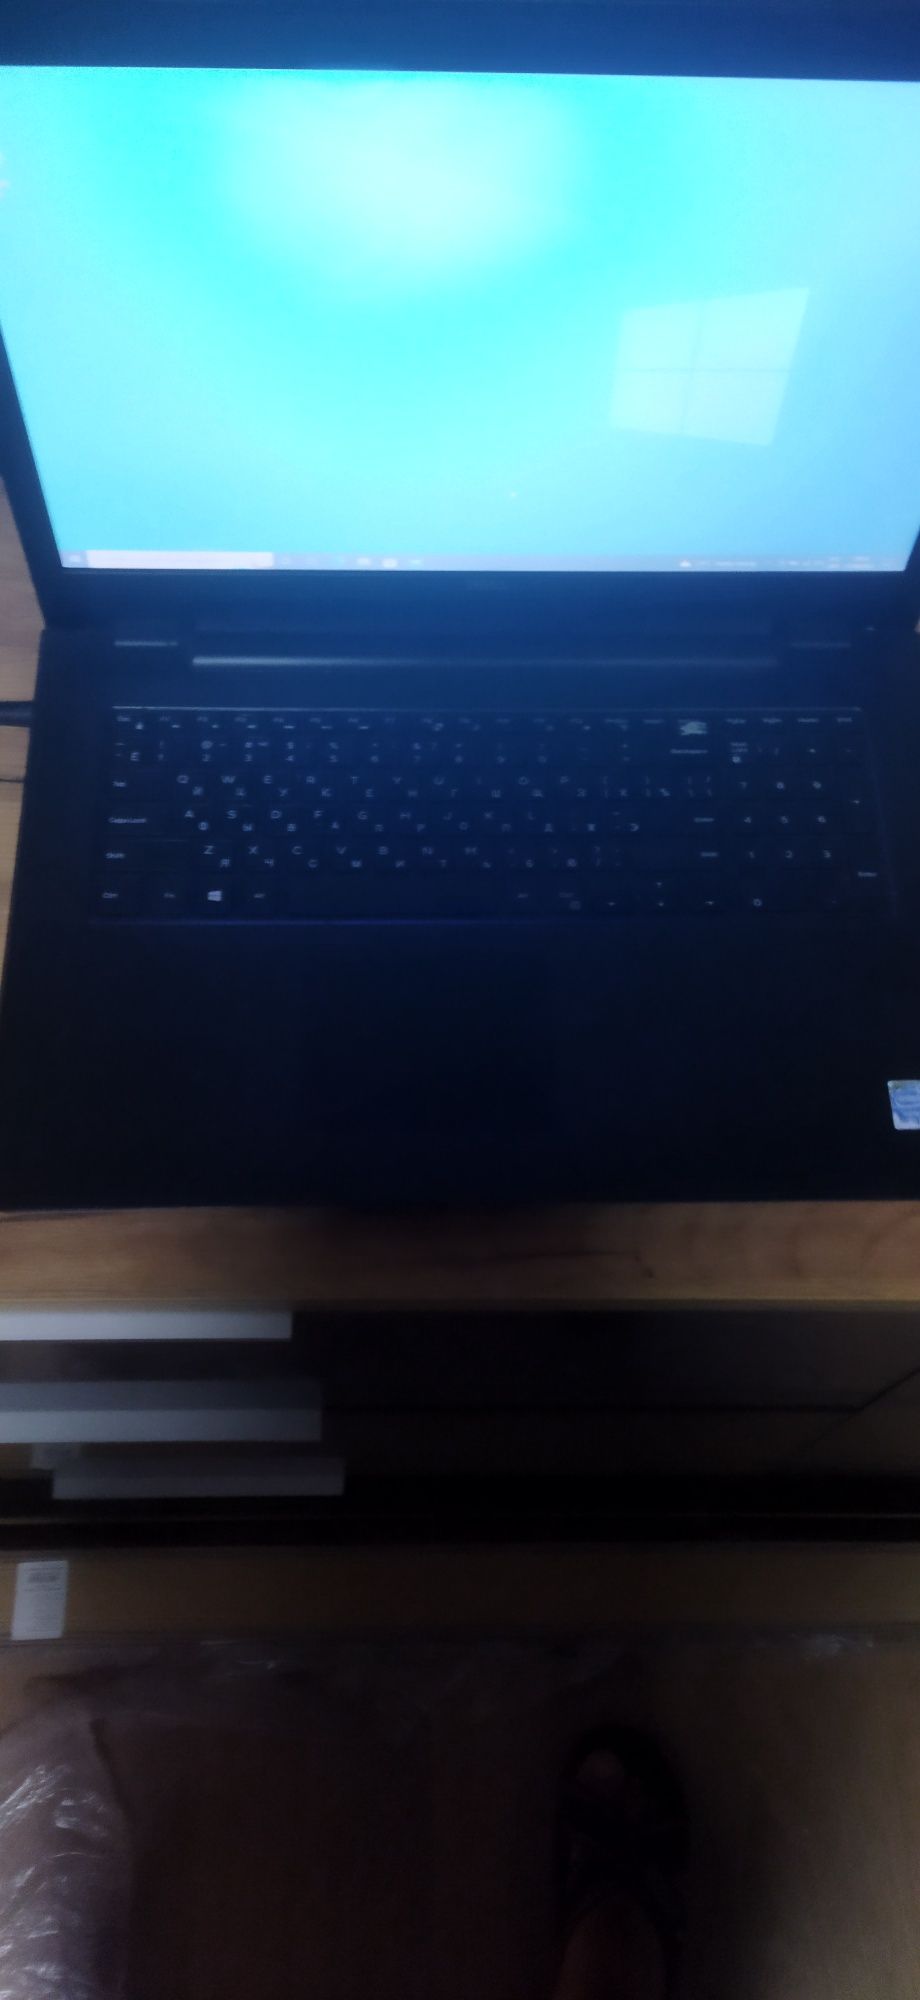 Ноутбук Dell, діагональ екрану 17.3 дюйма,повністю робочий,великий екр